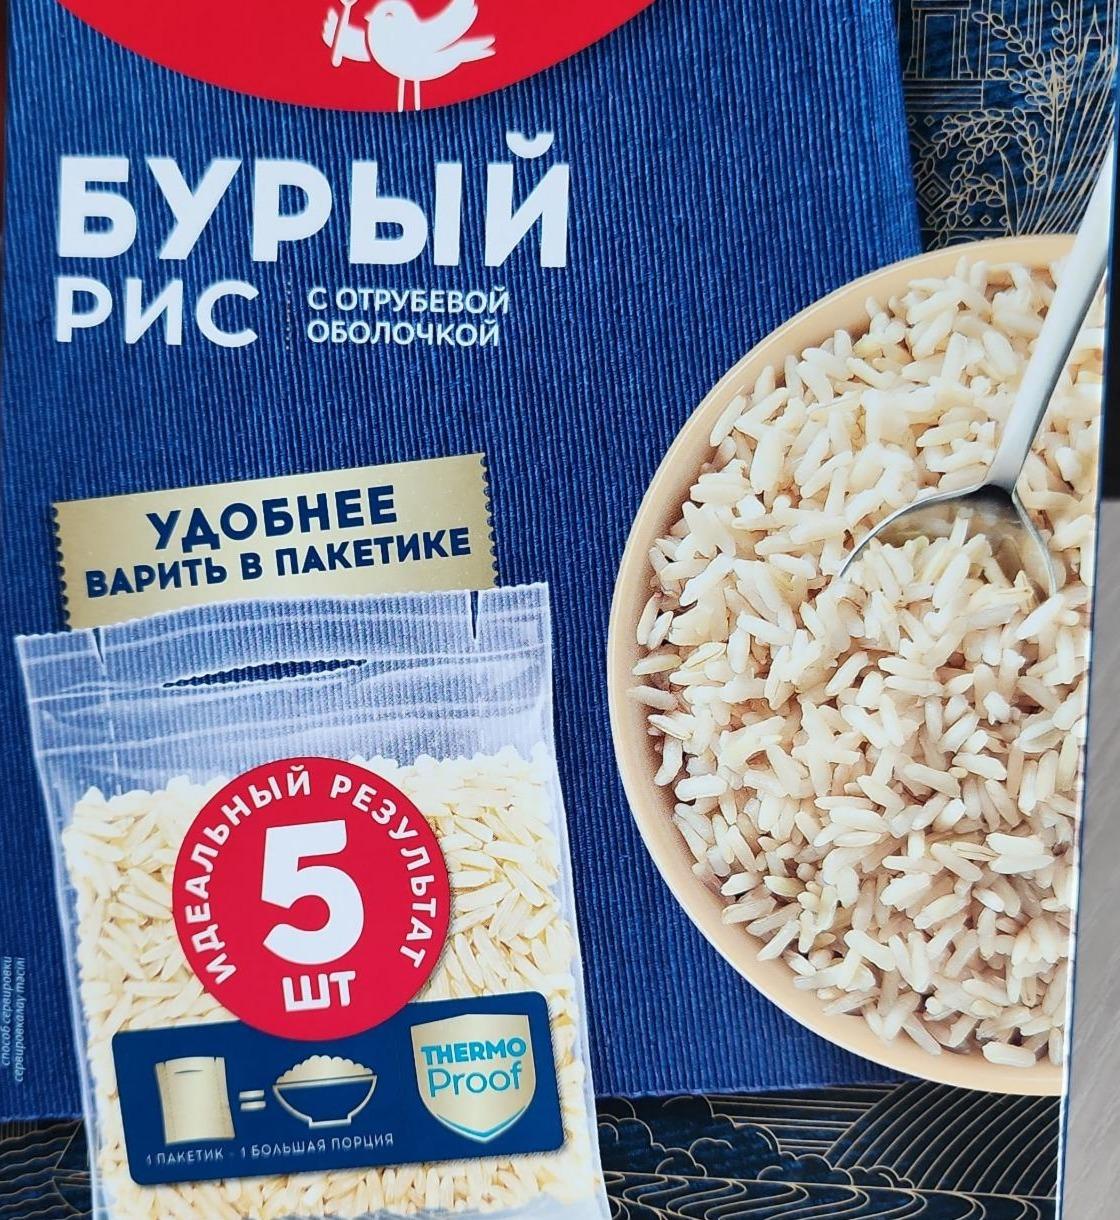 Фото - Бурый рис с отрубевой оболочкой в пакетиках Увелка